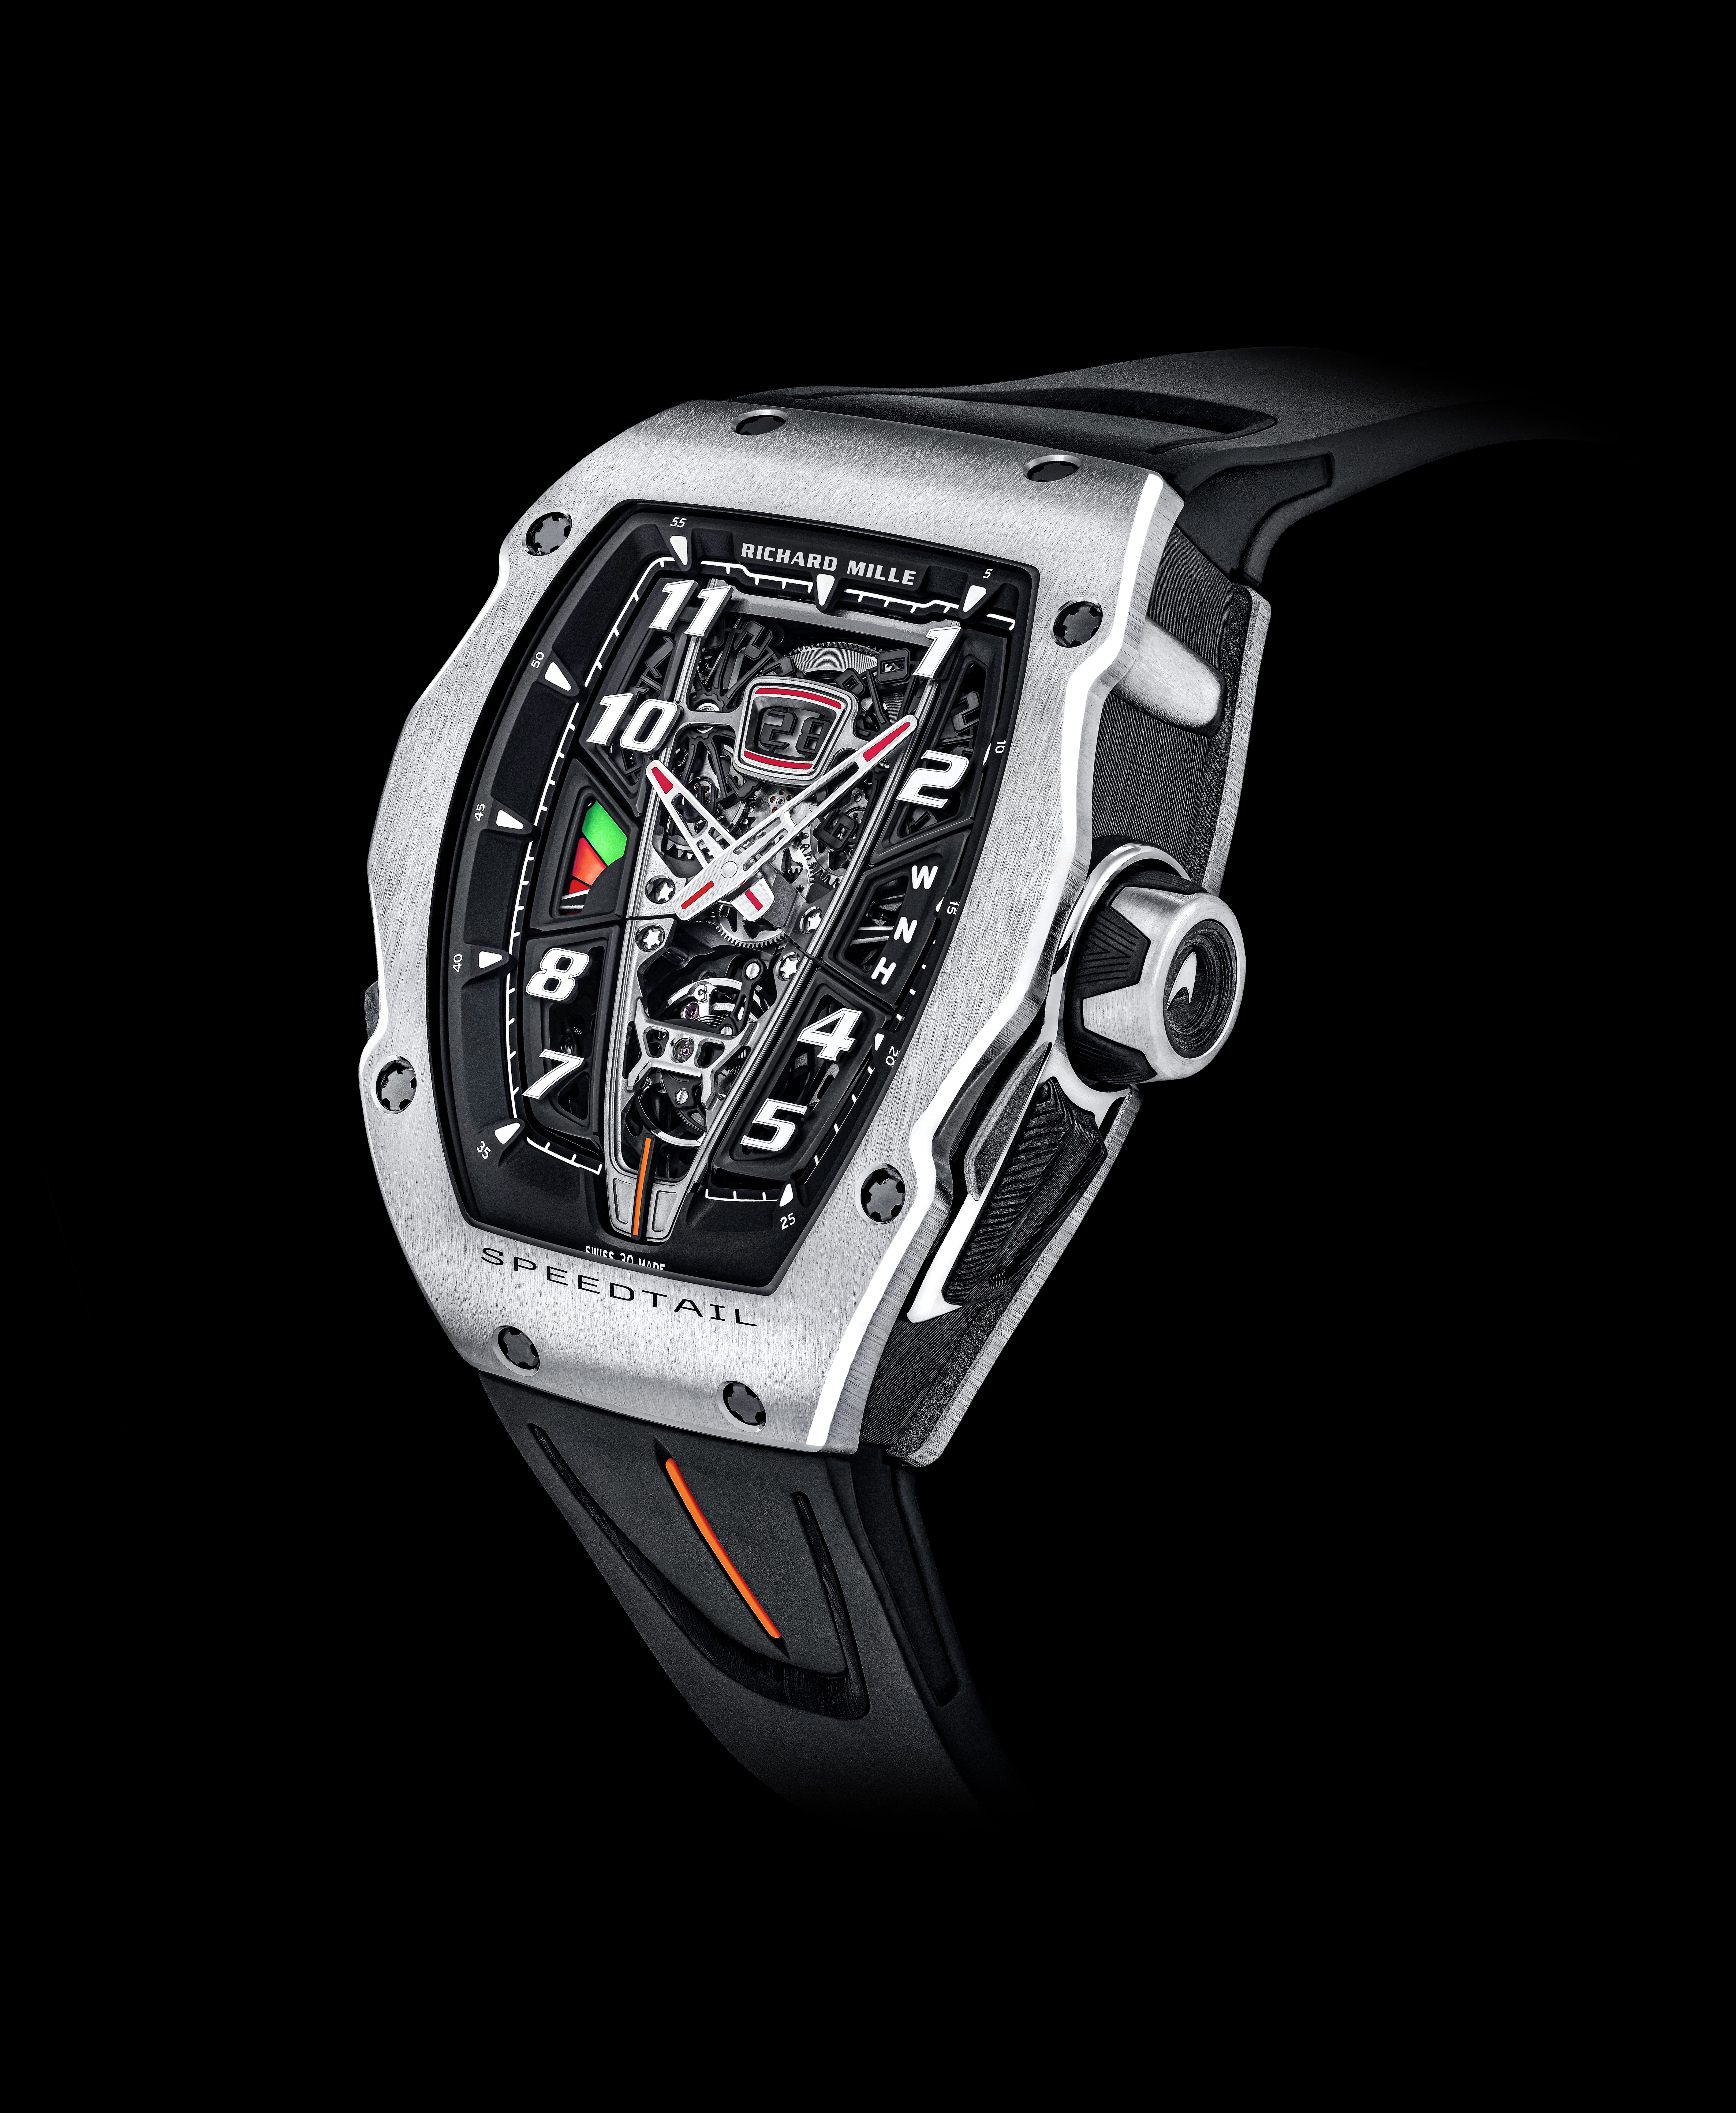 RM 40-01 Speedtail timepiece